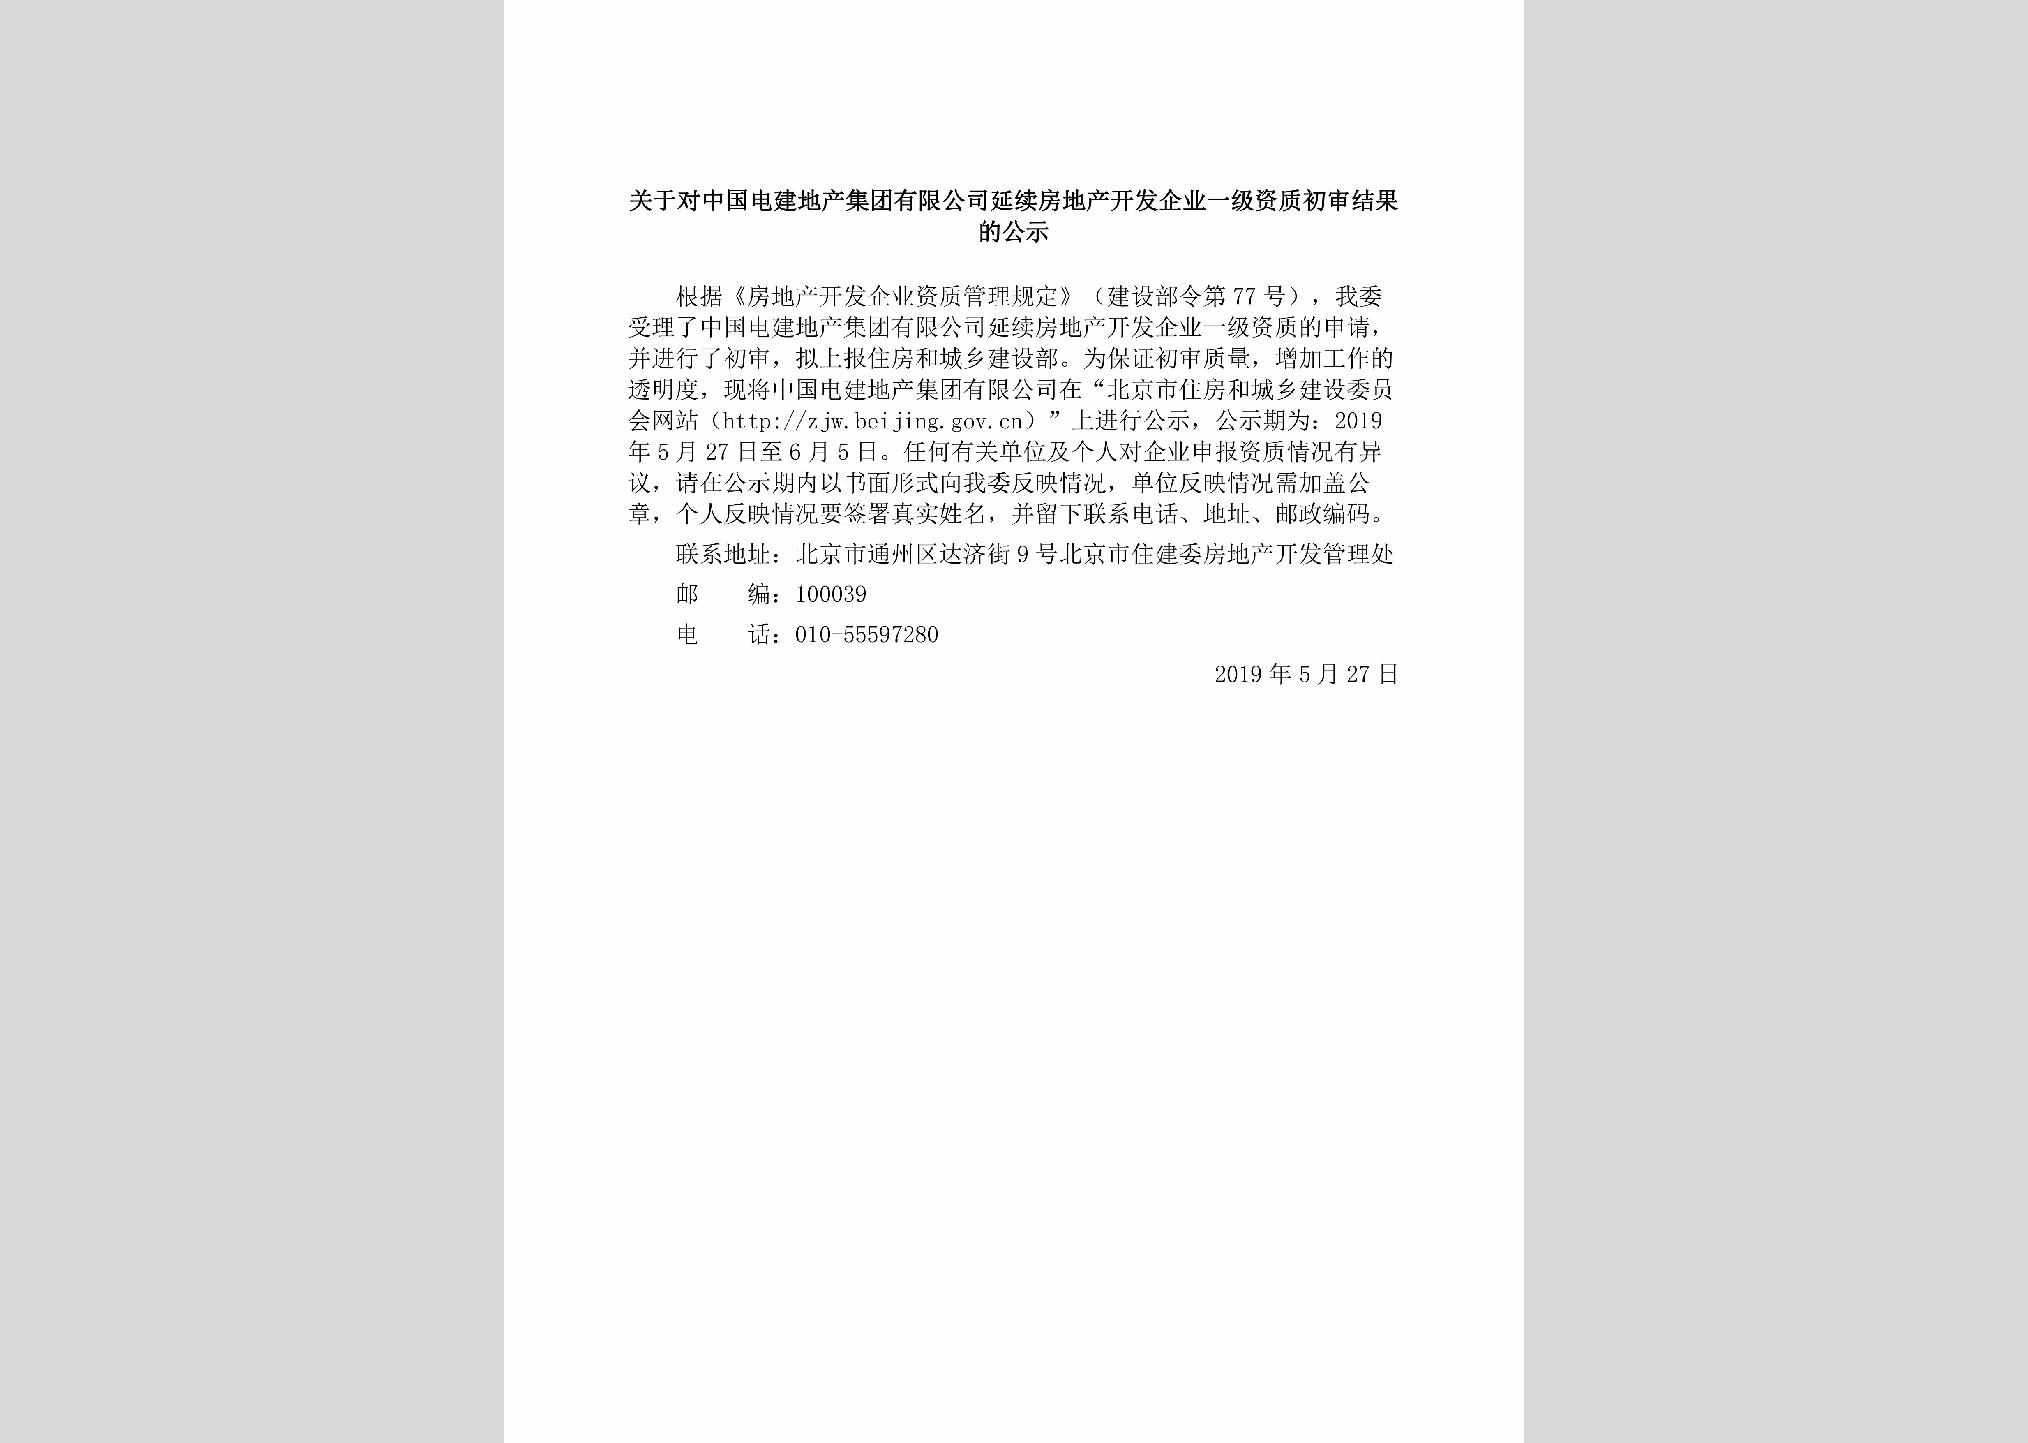 BJ-ZGDJDCJT-2019：关于对中国电建地产集团有限公司延续房地产开发企业一级资质初审结果的公示